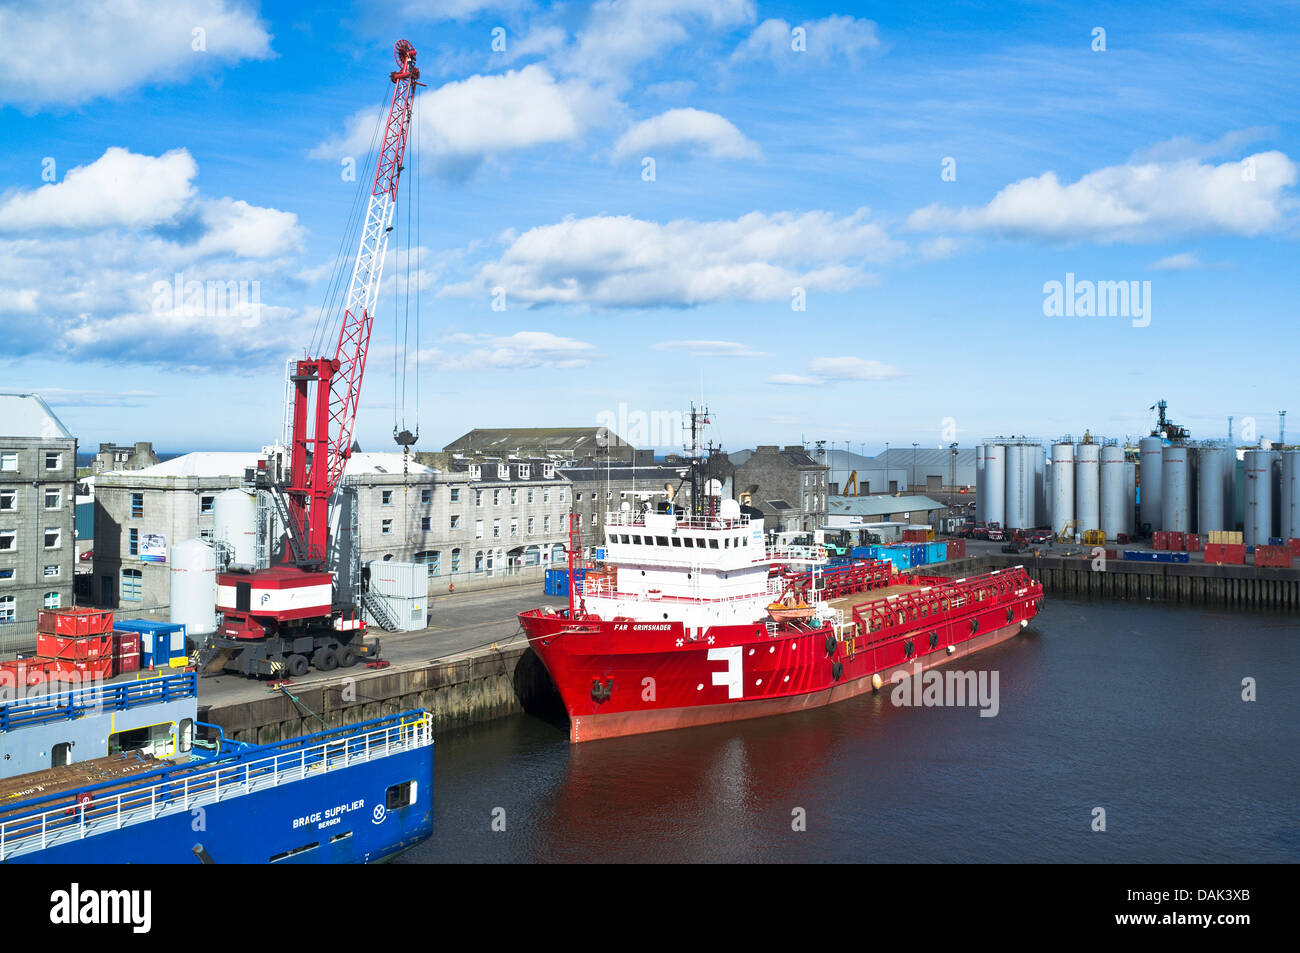 dh Aberdeen Harbour HARBOUR ABERDEEN north sea oil support ship far grimshader crane aberdeen docks scotland Stock Photo